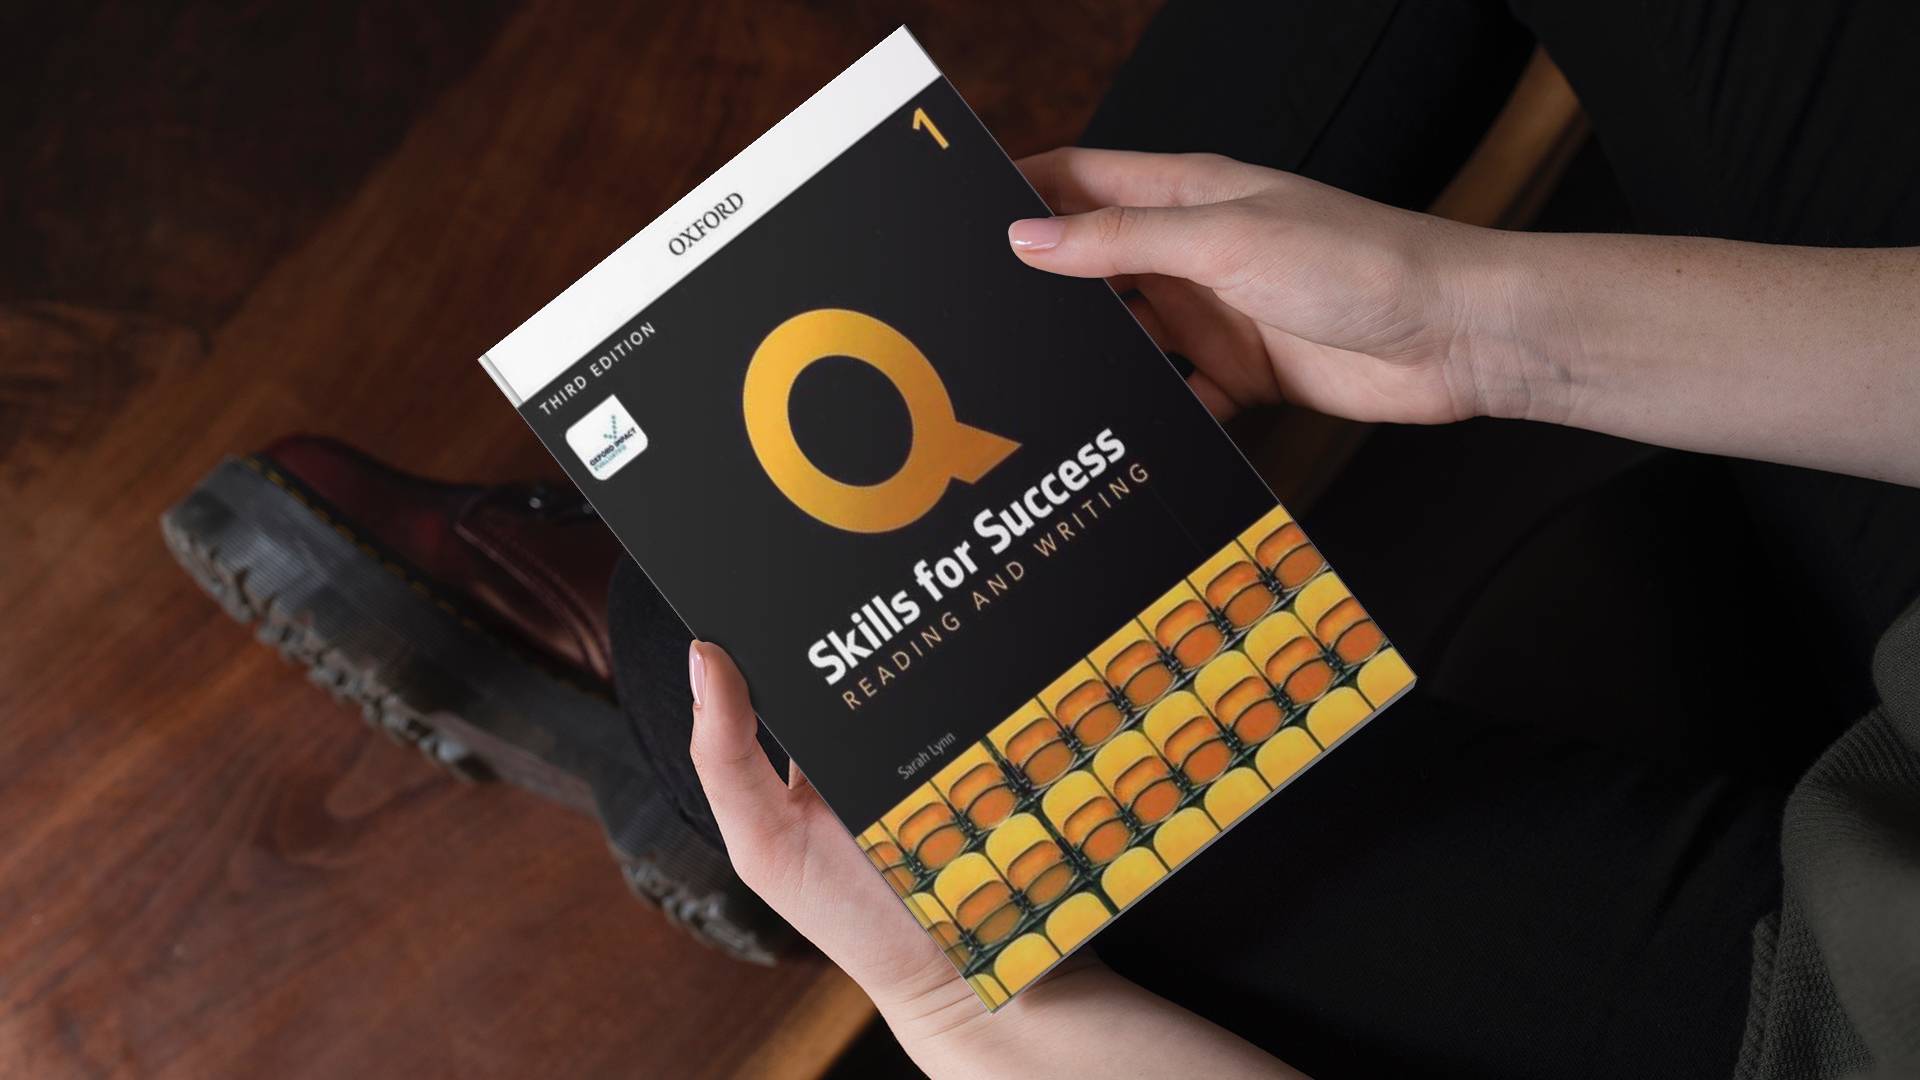 خرید کتاب زبان | فروشگاه اینترنتی کتاب زبان | Q Skills For Success Reading And Writing 1 Third Edition | کیو اسکیلز فور ساکسس ریدینگ اند رایتینگ یک ویرایش سوم